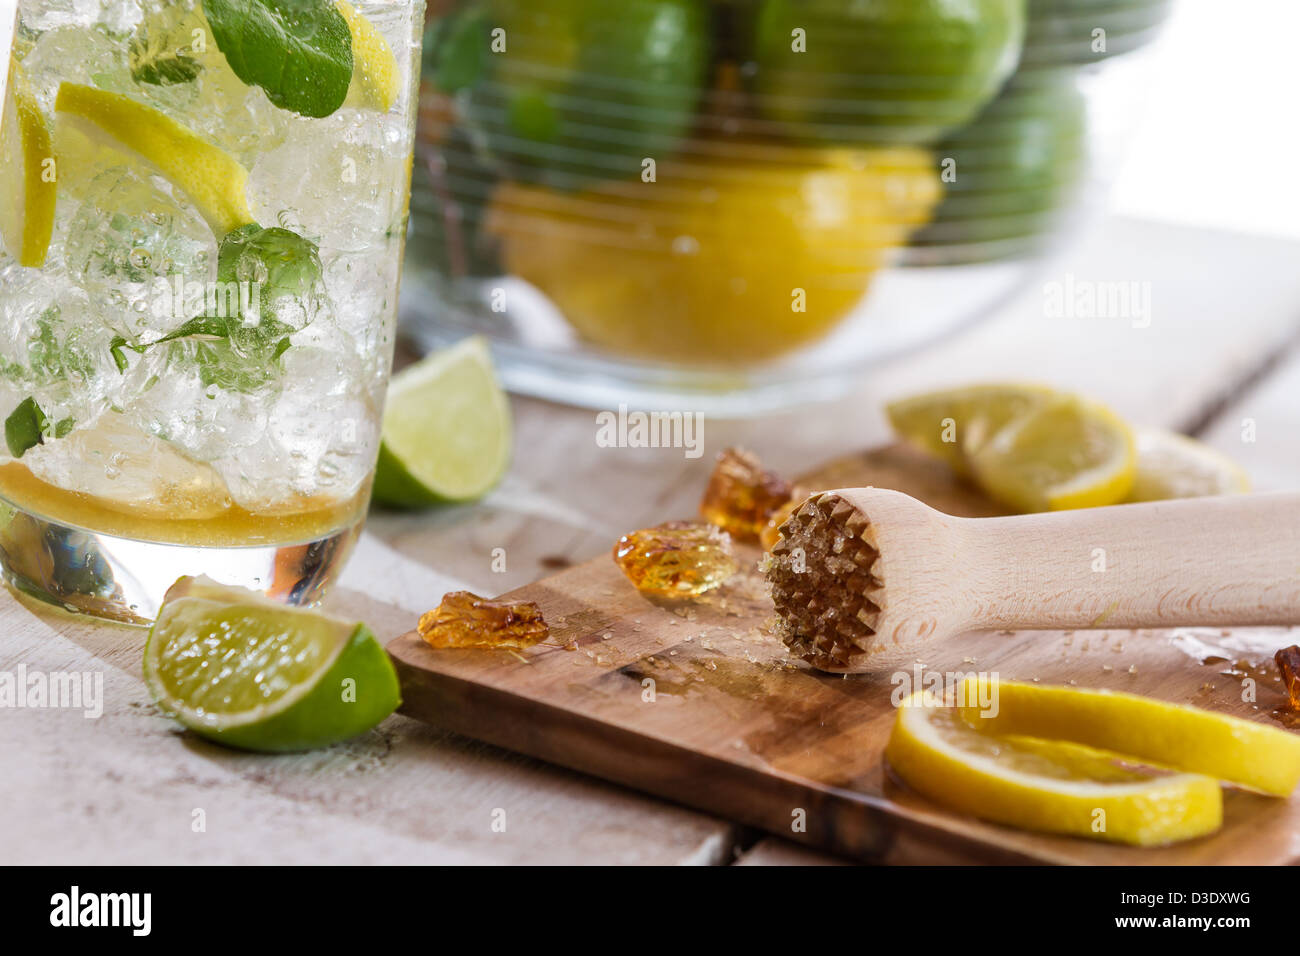 Primo piano di ingredienti per il freddo drink di agrumi Foto Stock